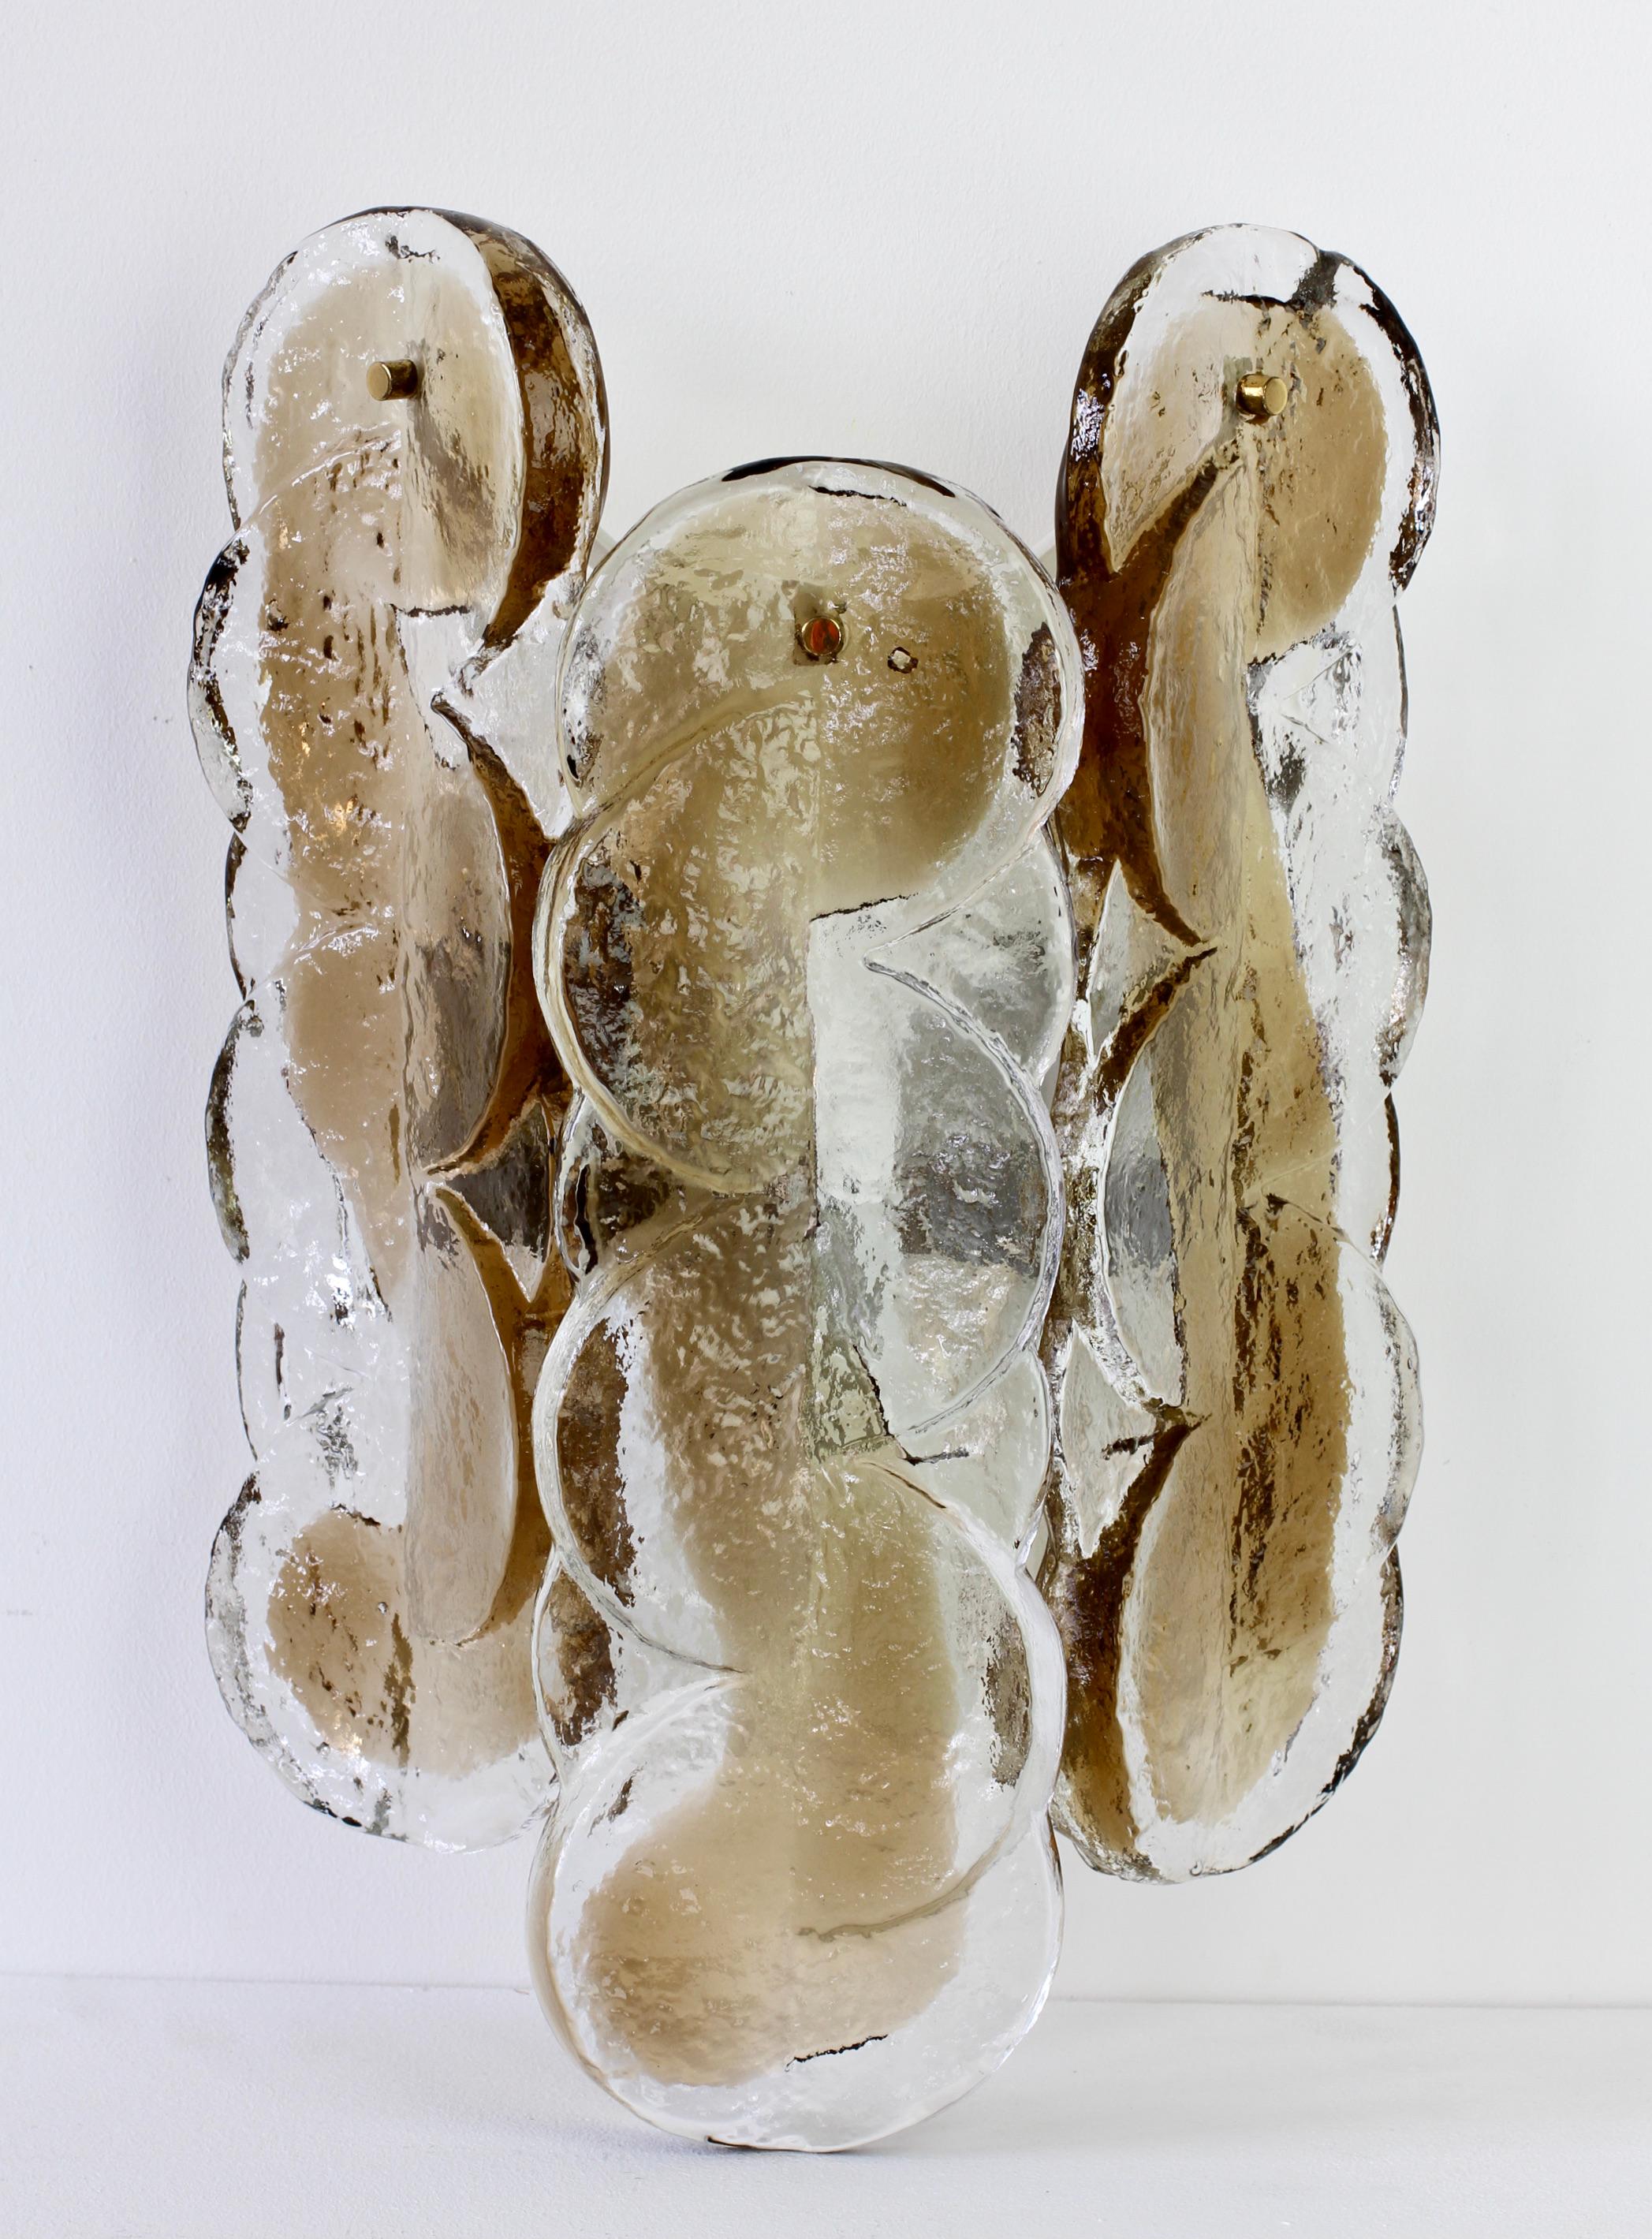 Kalmar große & elegante Vintage Mid-Century Modern Österreich gemacht schmelzendes Eis Glas Wandleuchte., Lampe oder Wandleuchter, ca. 1970 gemacht. Die Leuchte verfügt über drei große, strukturierte Glaselemente in Form von Zitrusfruchtsegmenten